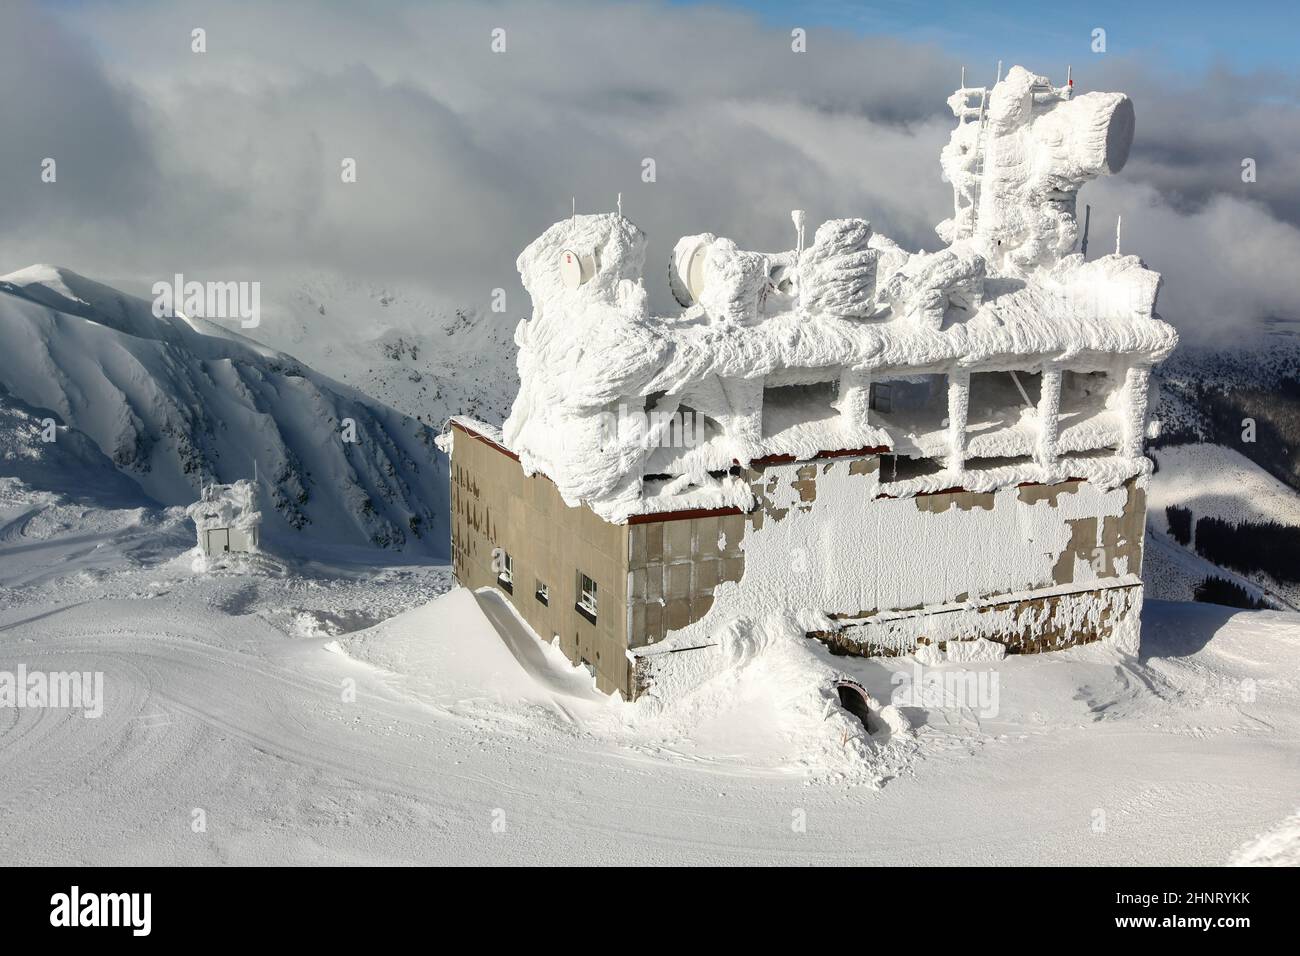 Jasna, Slowakei - 18. Januar 2018: Skilift-Gebäude, mit Antennen auf dem Dach, oben auf dem Chopok-Berg, komplett mit Schnee bedeckt. Starker Wind und Schnee sind im Winter auf den Gipfeln der Nizke Tatry verbreitet. Stockfoto